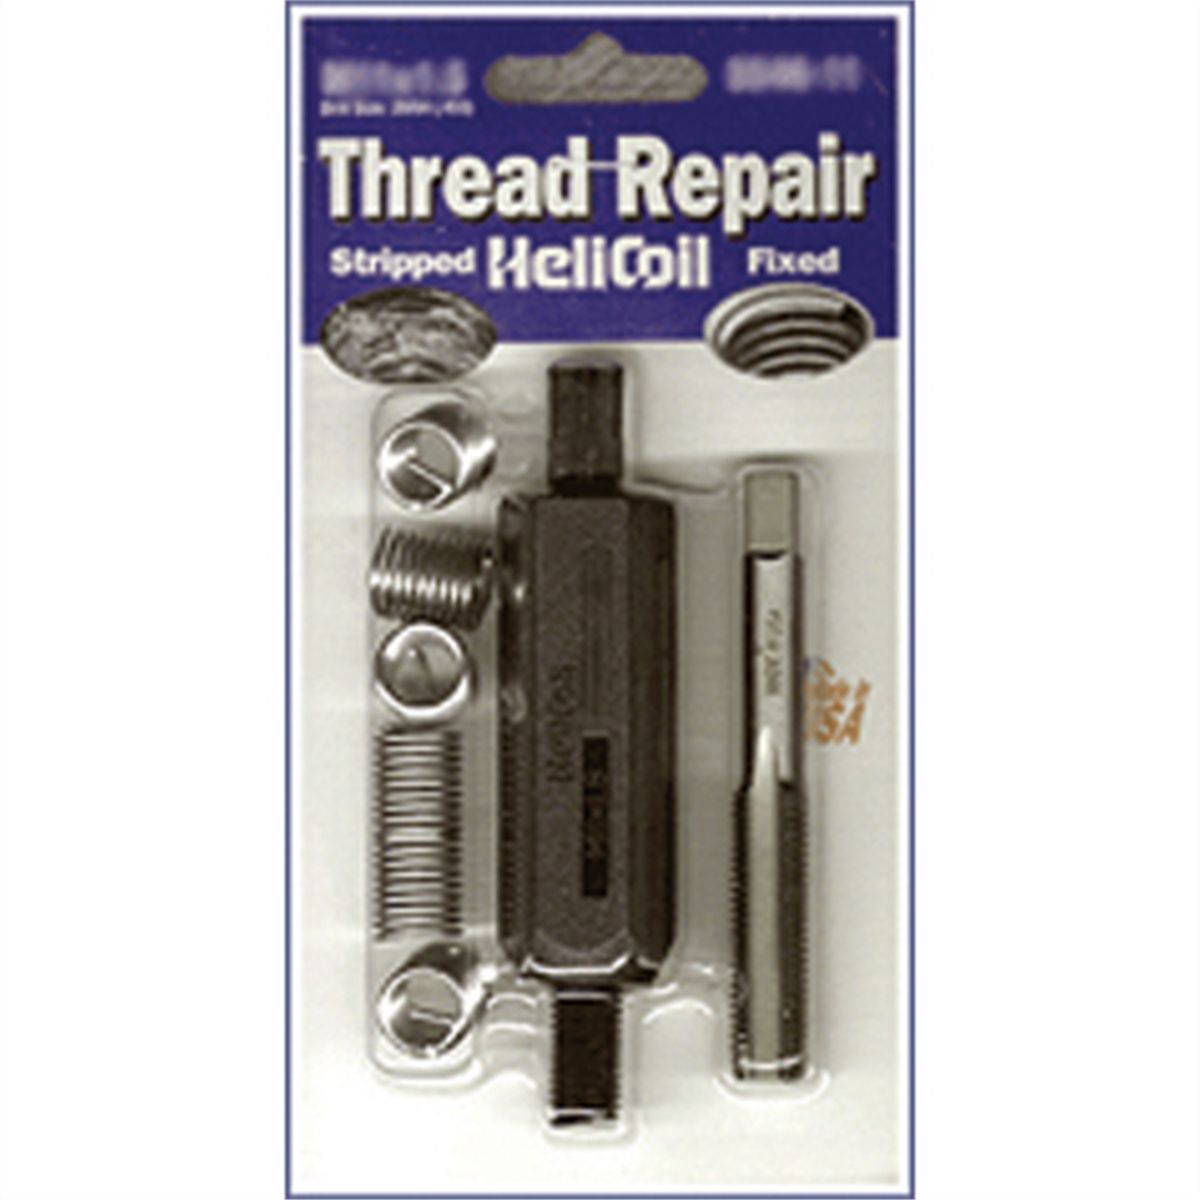 Metric Coarse Thread Repair Kit - M12x1.75 x 18.0mm